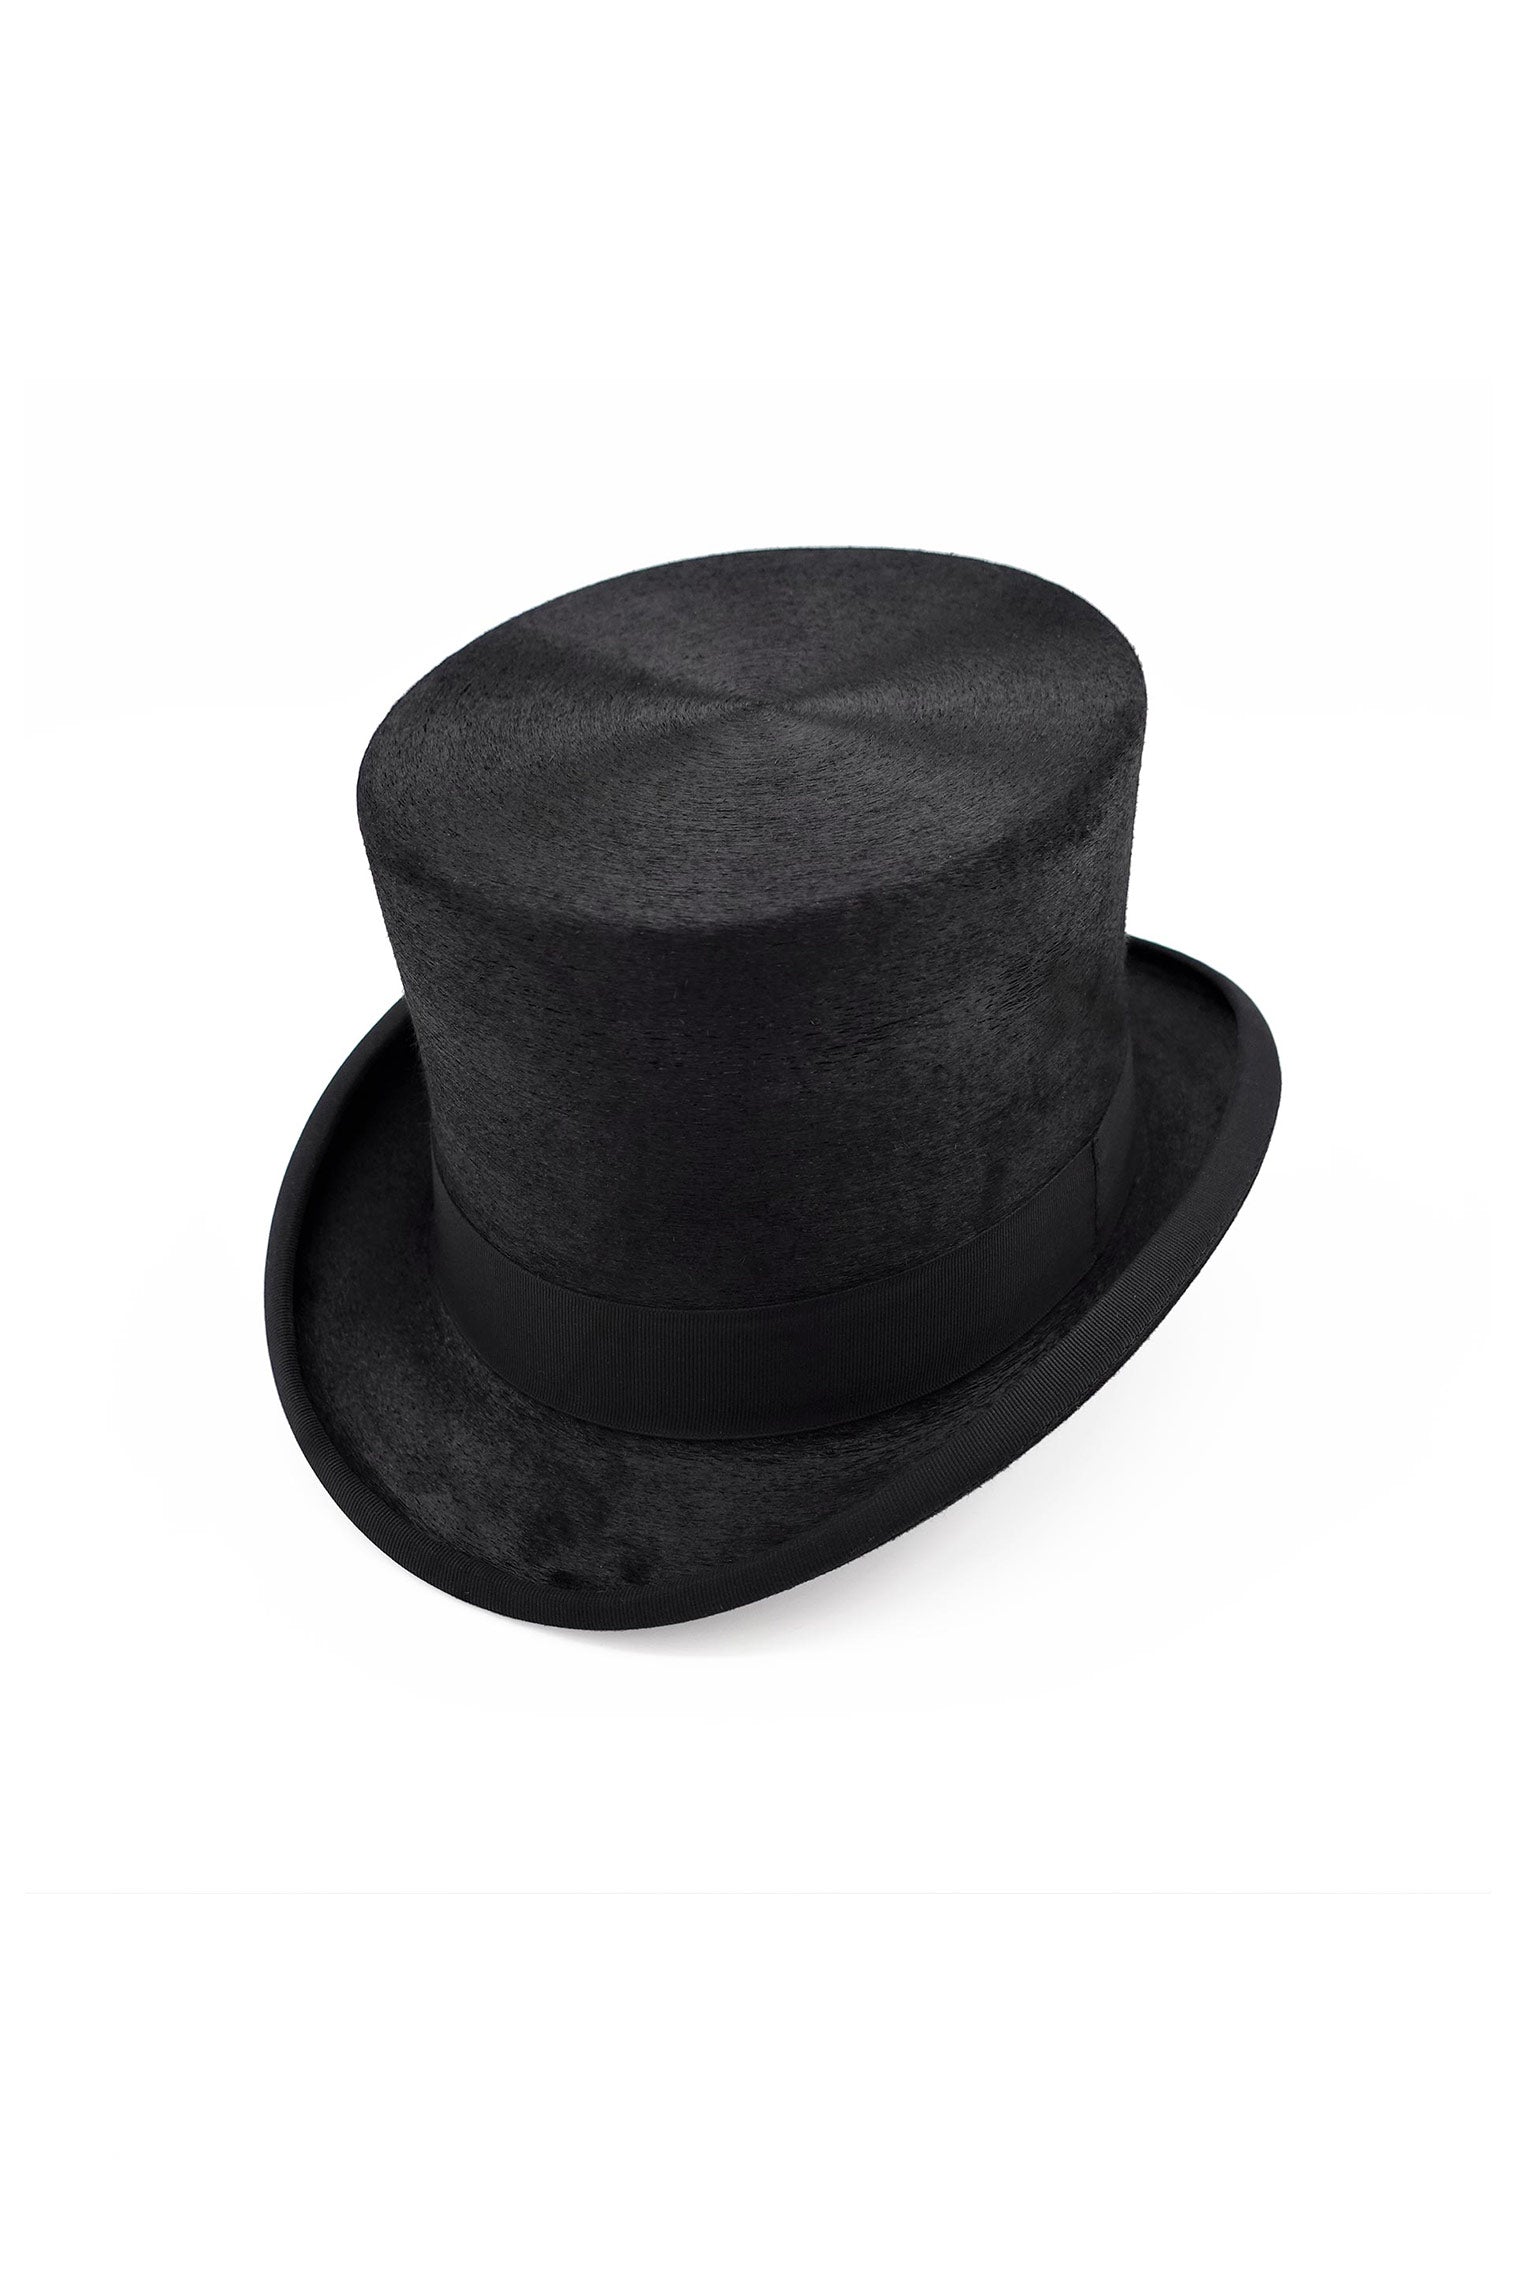 Mayfair Top Hat - Men's Hats - Lock & Co. Hatters London UK